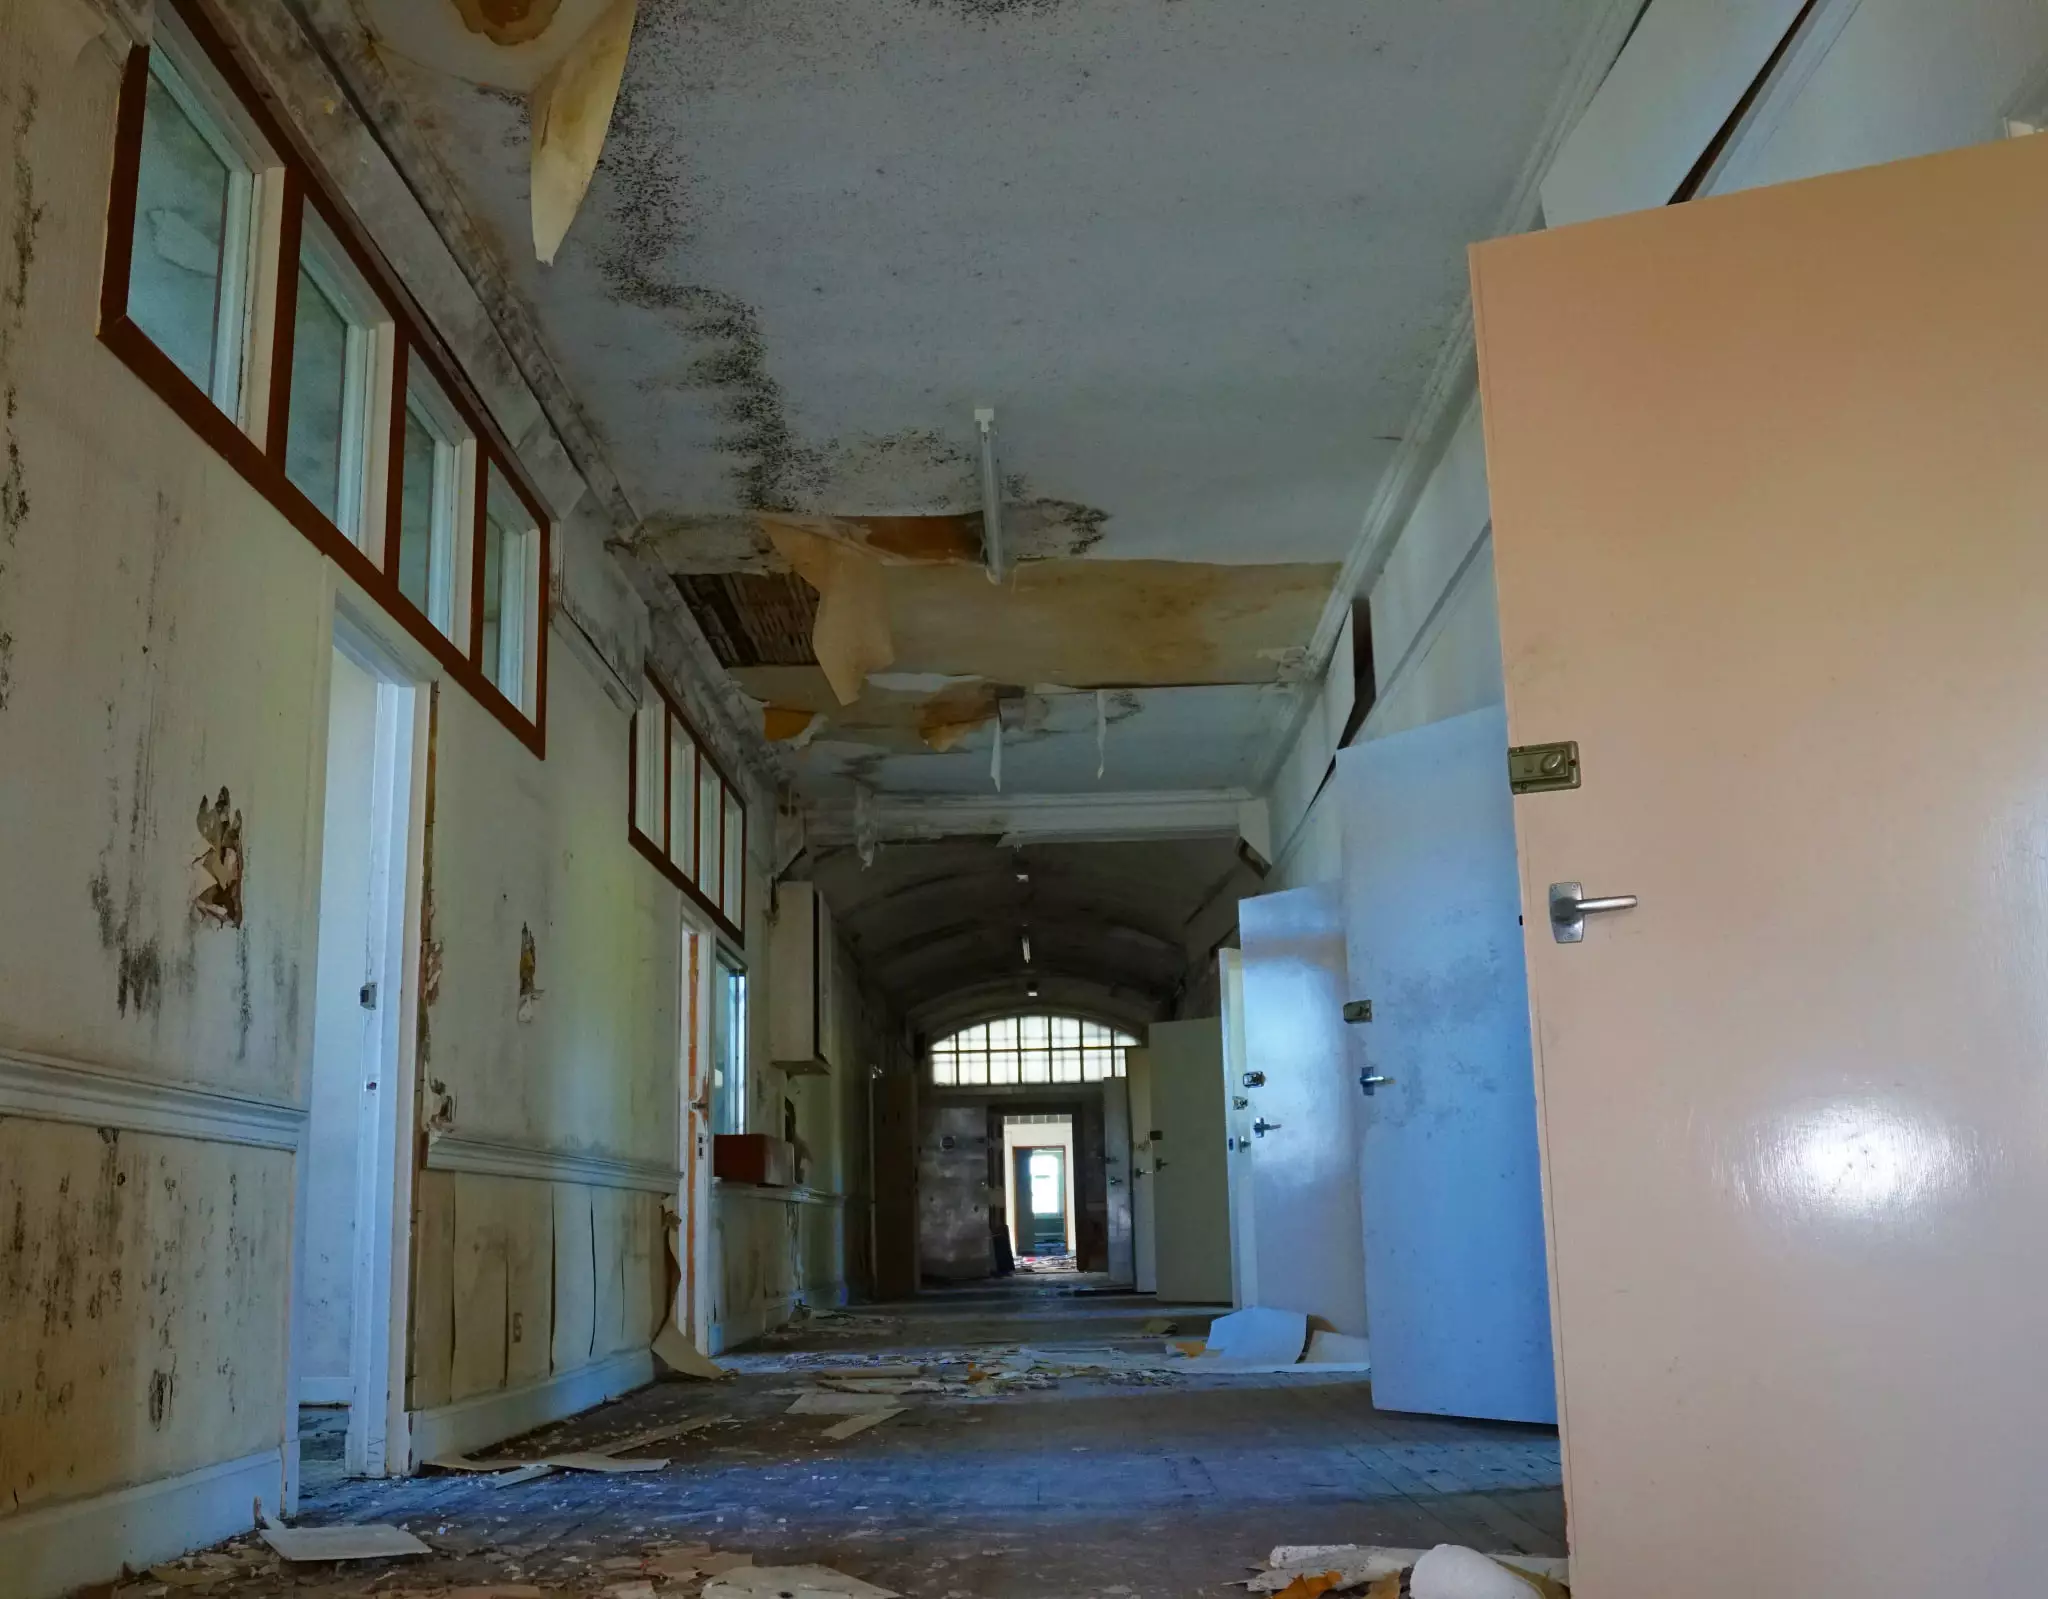 Inside the abandoned asylum.